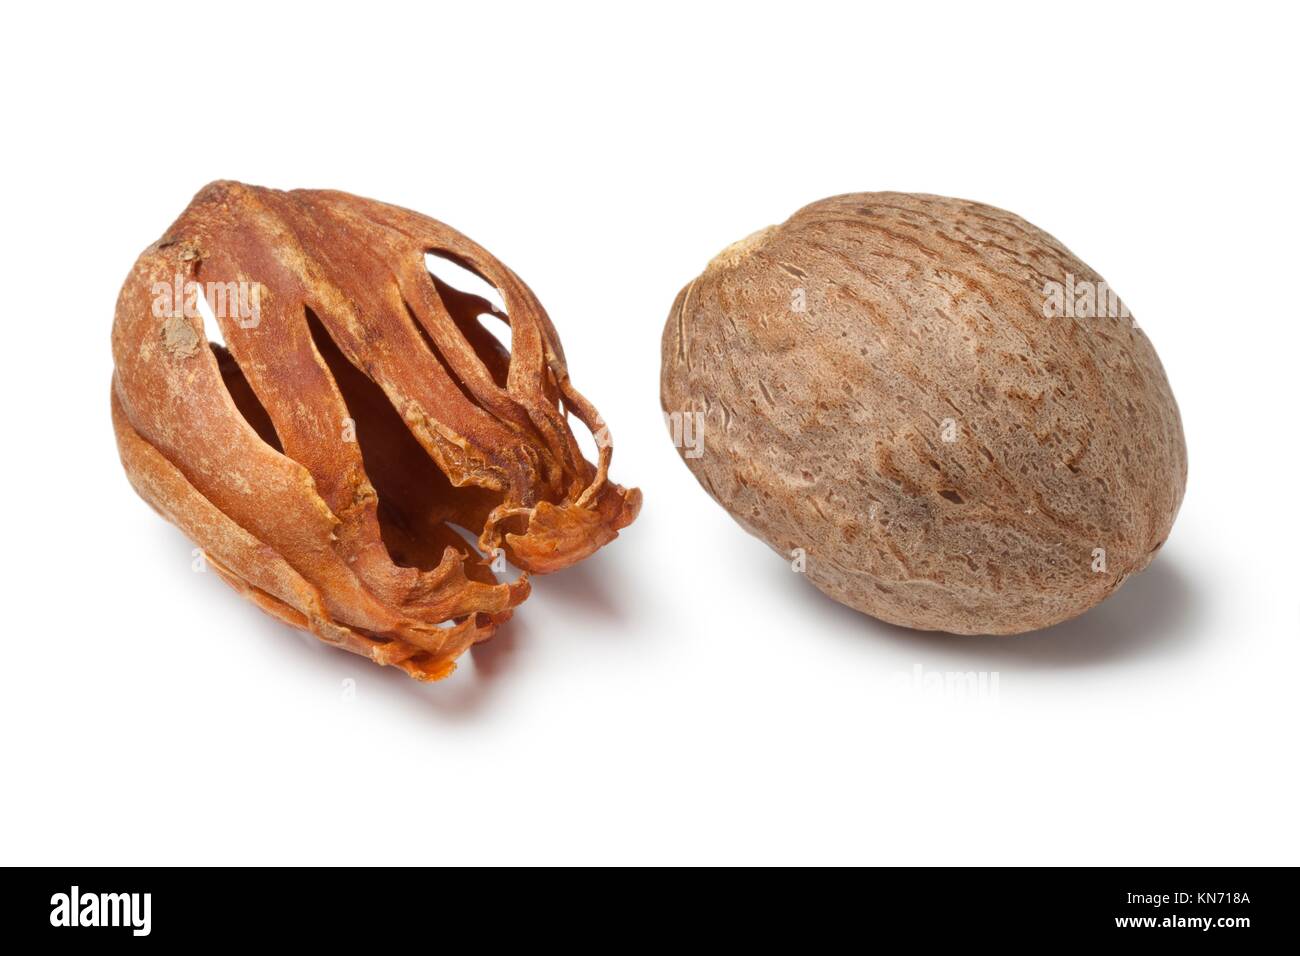 Single nutmeg kernel and mace on white background. Stock Photo